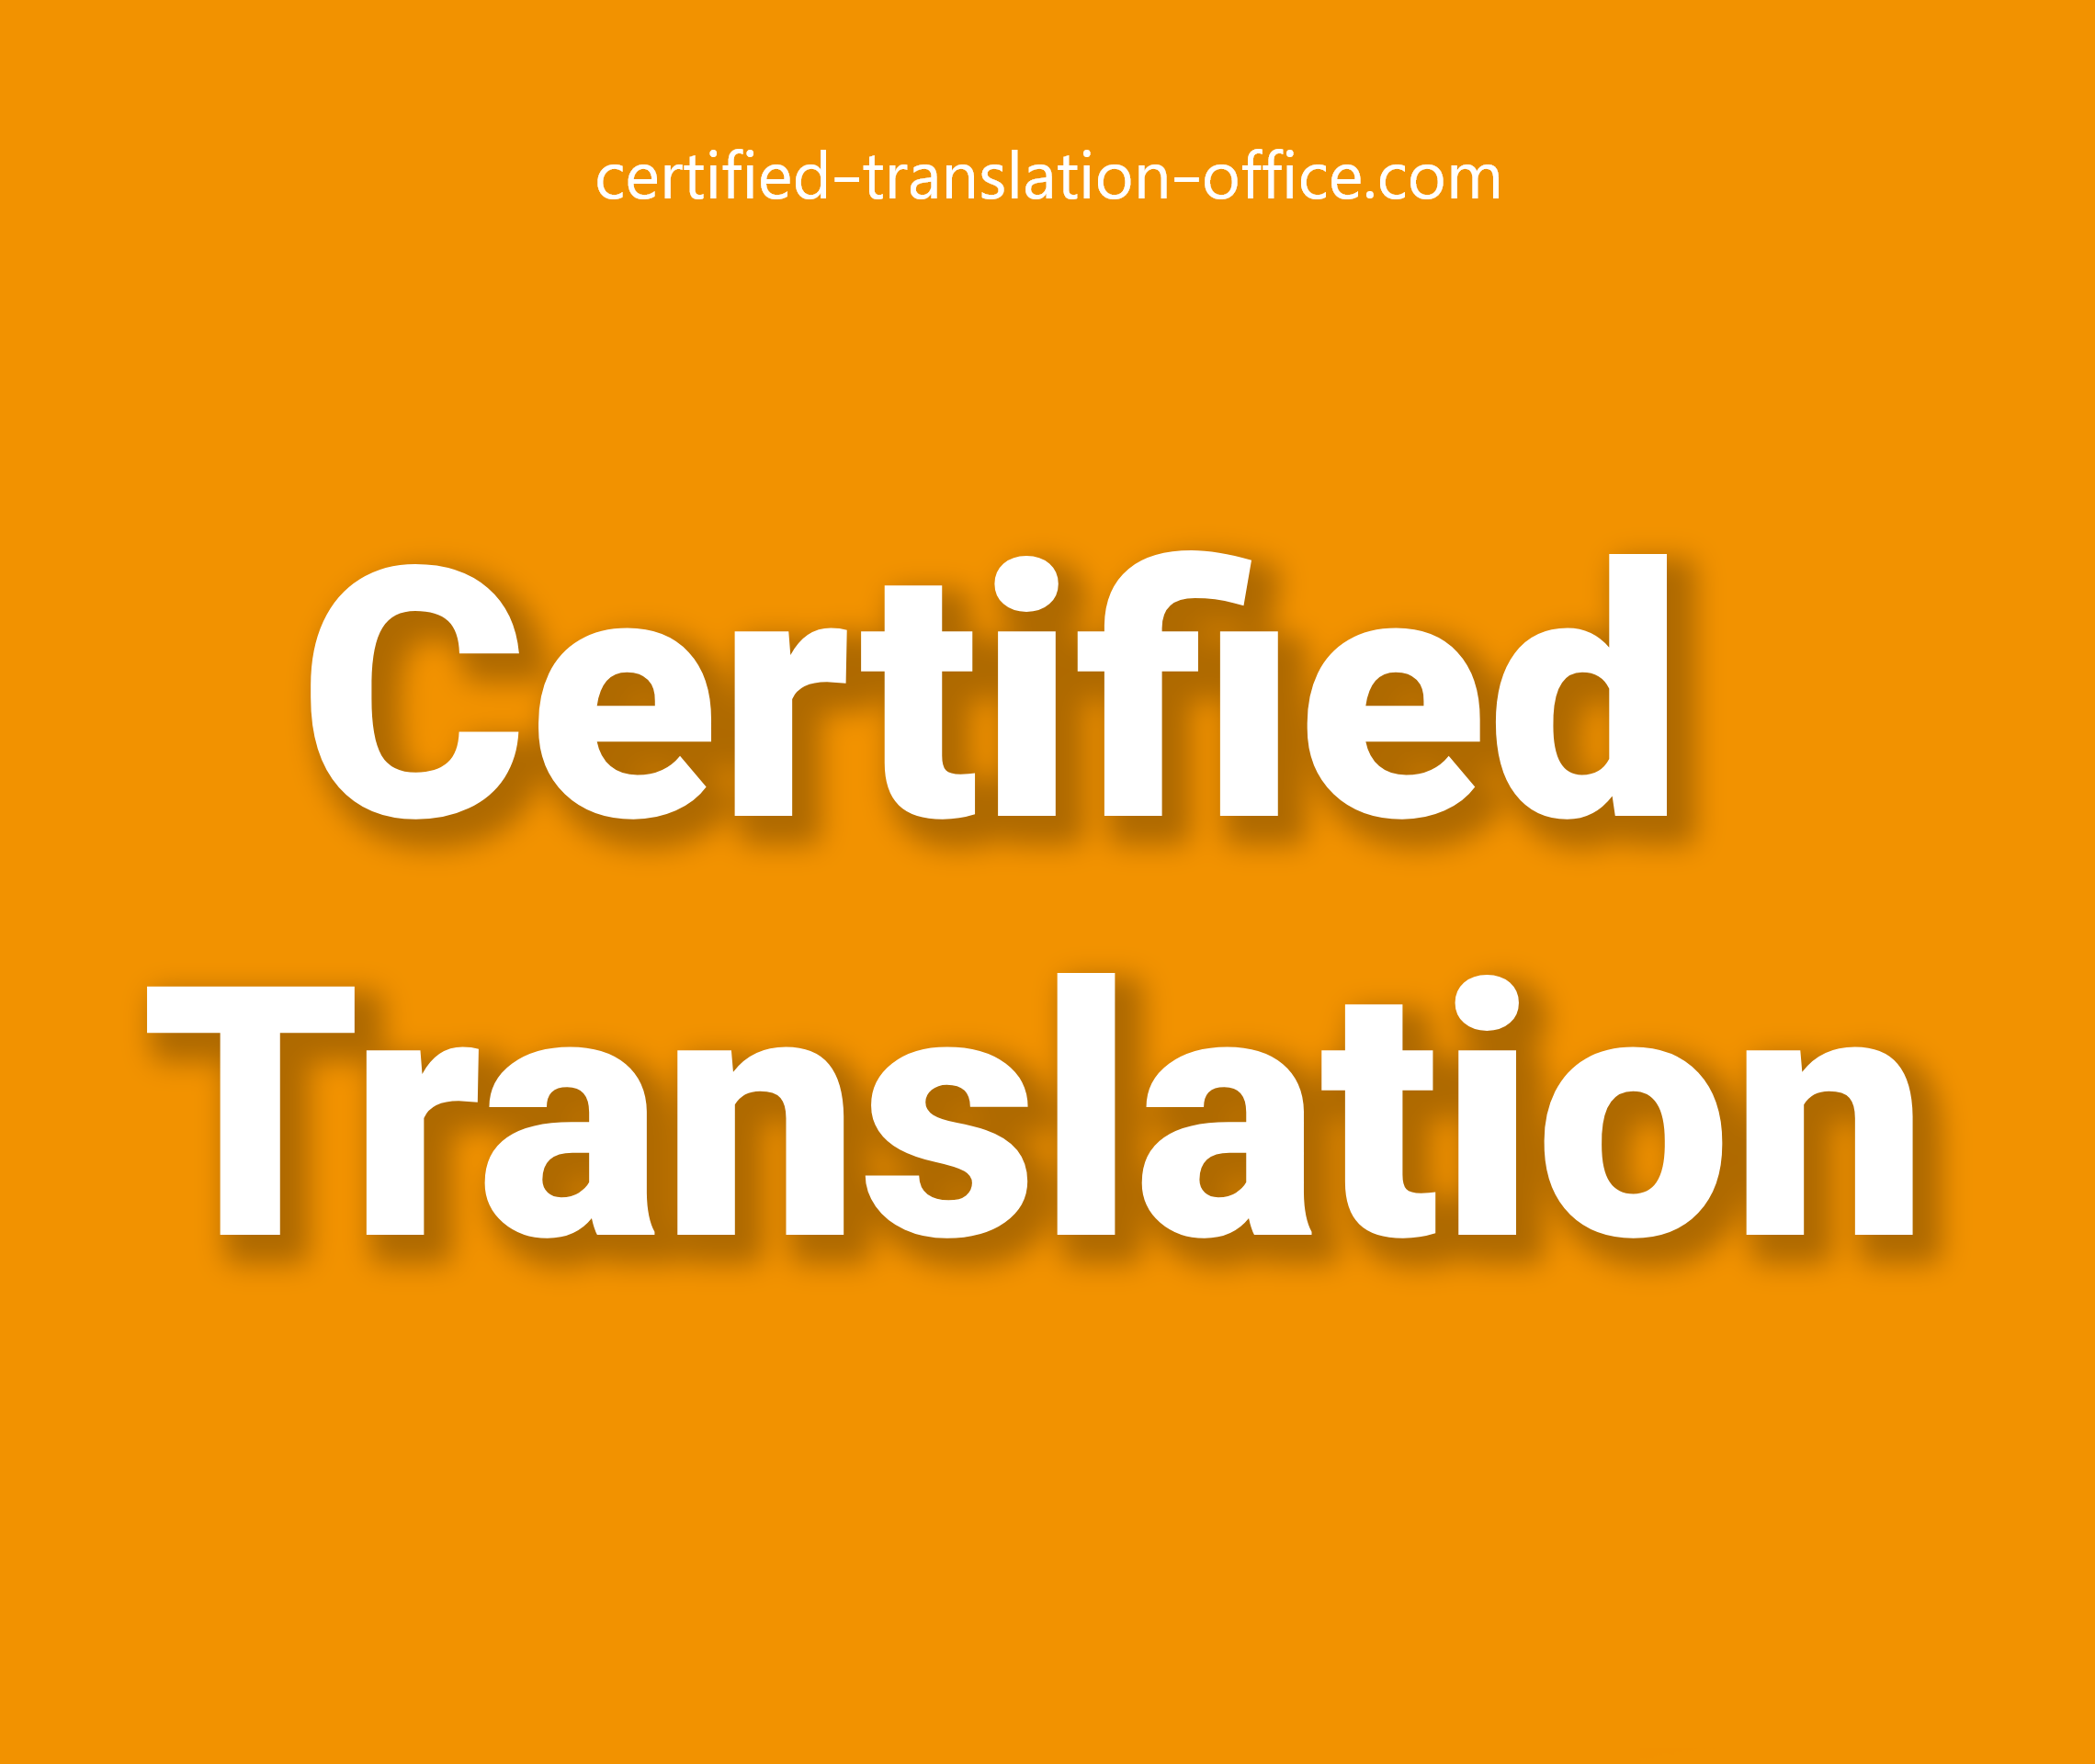 Certified Translation Office near me